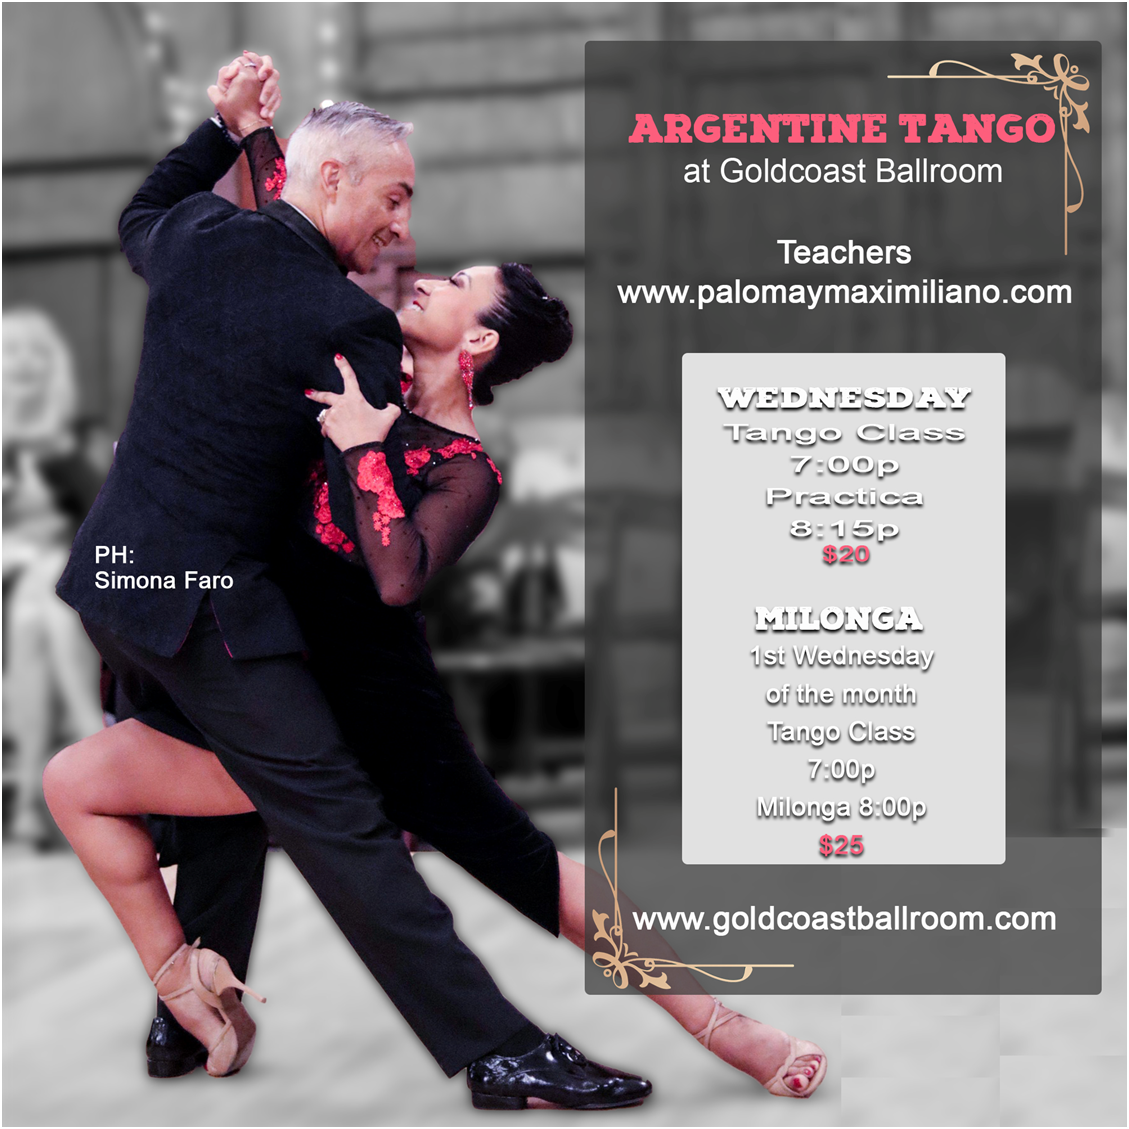 Argentine Tango with Paloma & Maxmiliano - at Goldcoast Ballroom!